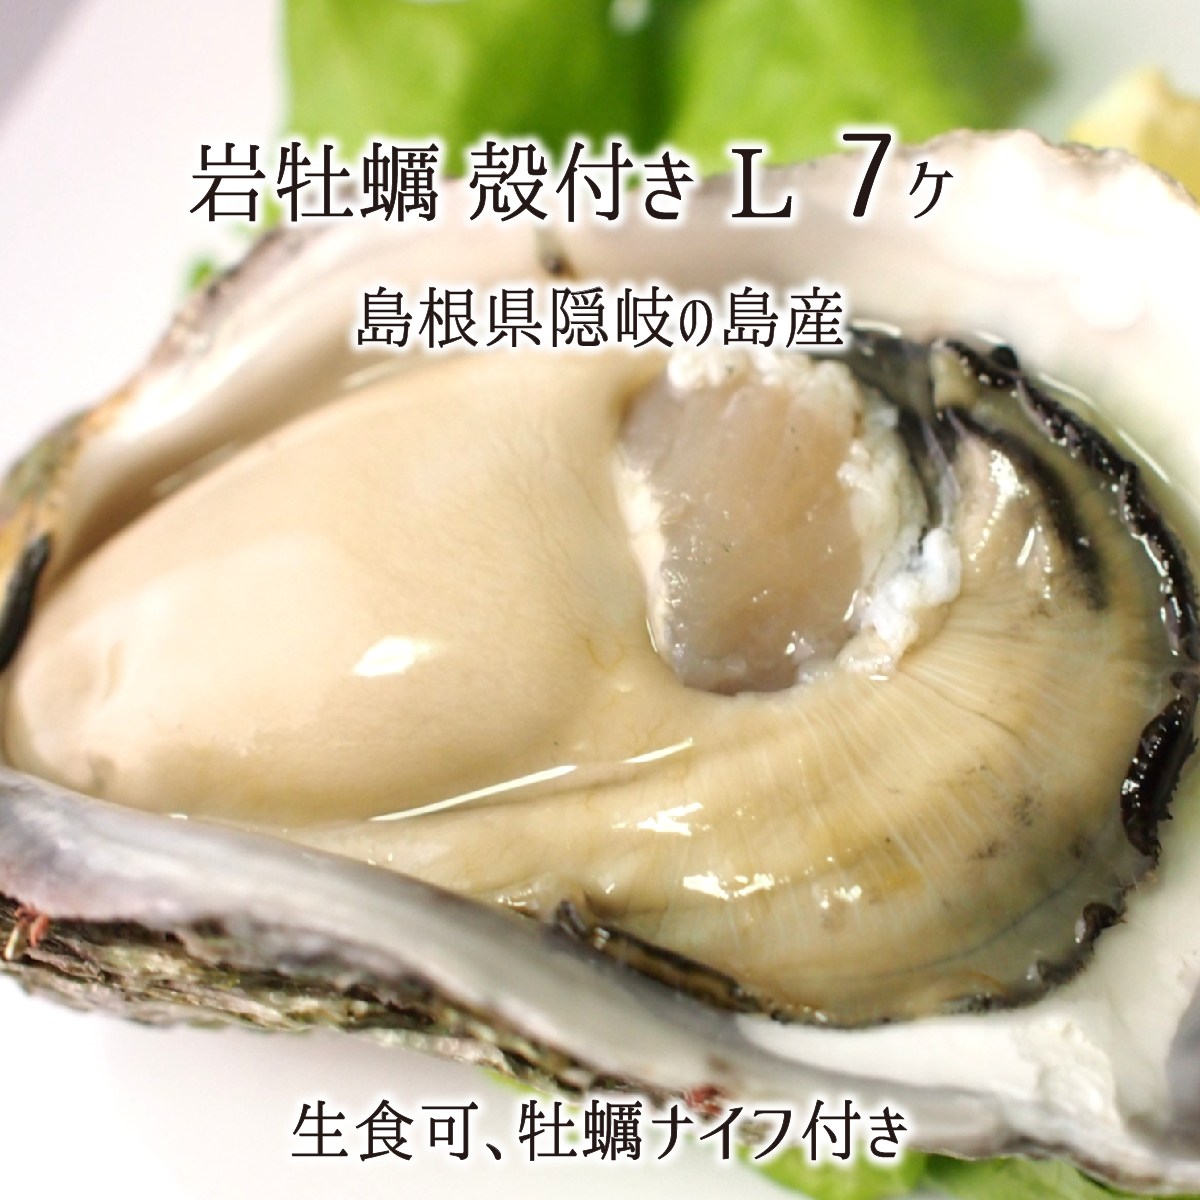 岩牡蠣(生食可) Lサイズ 7個 約2.3kg 島根県隠岐の